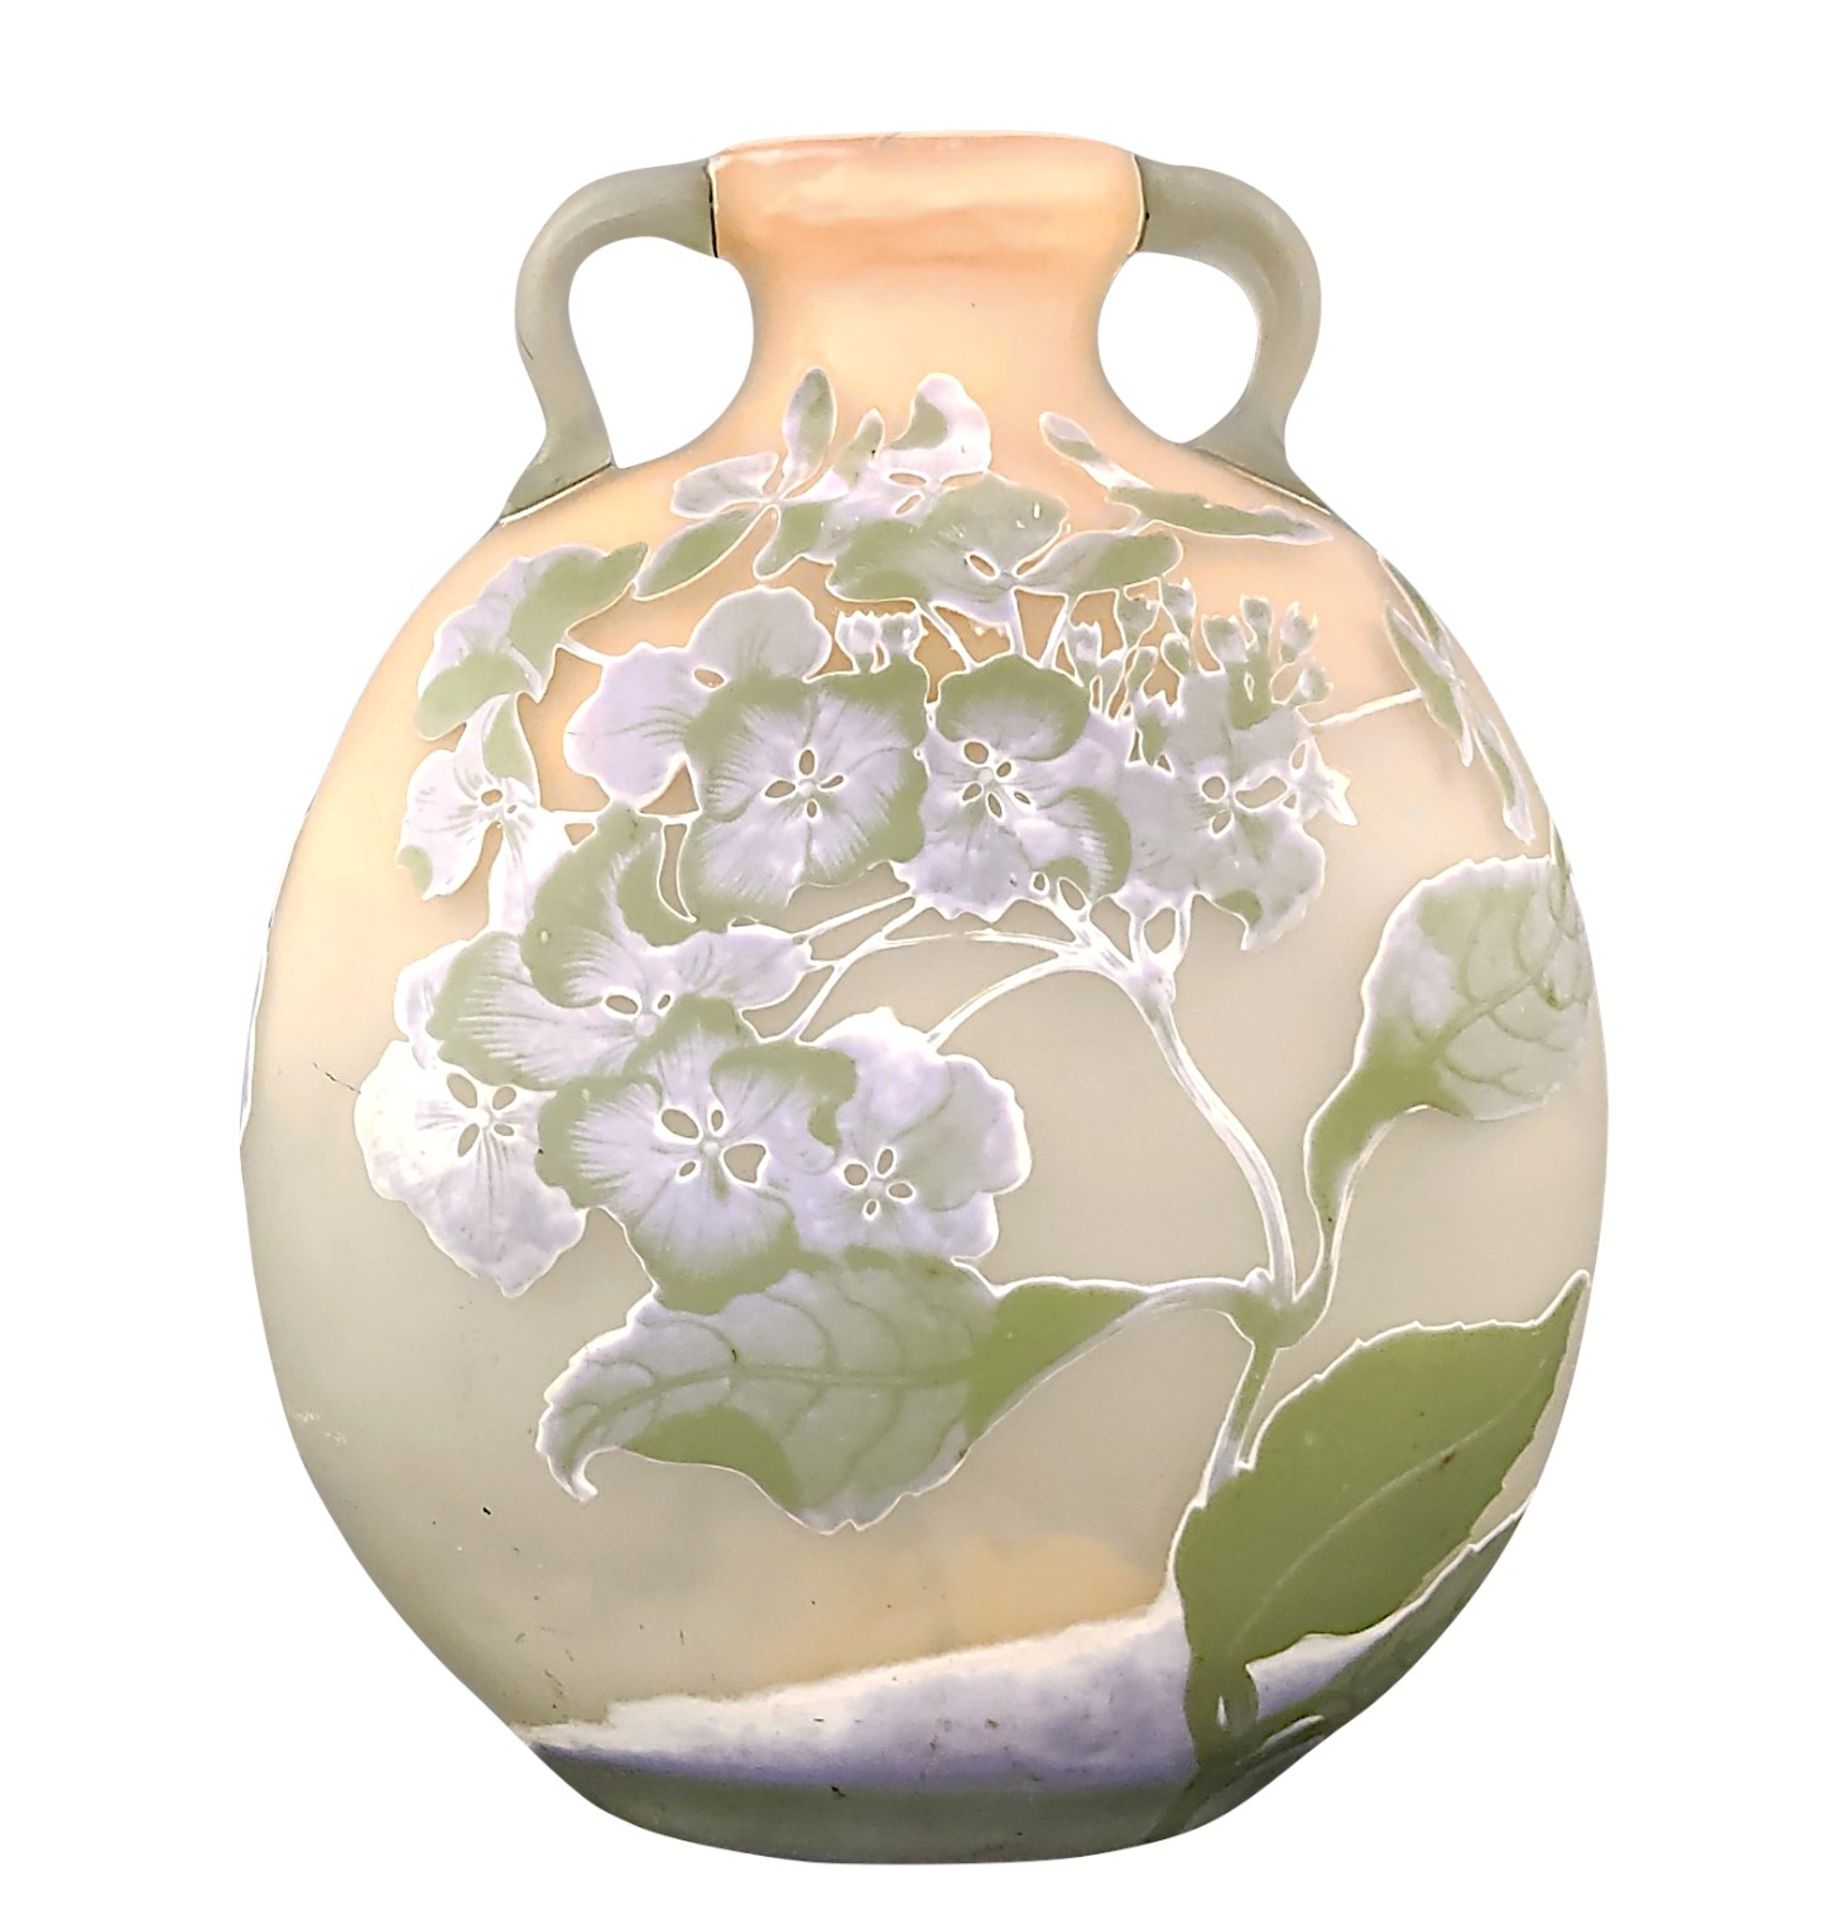 Large art nouveau double handle vase "Groseilles", Emile Gallé, oval form with flattened sides, ind